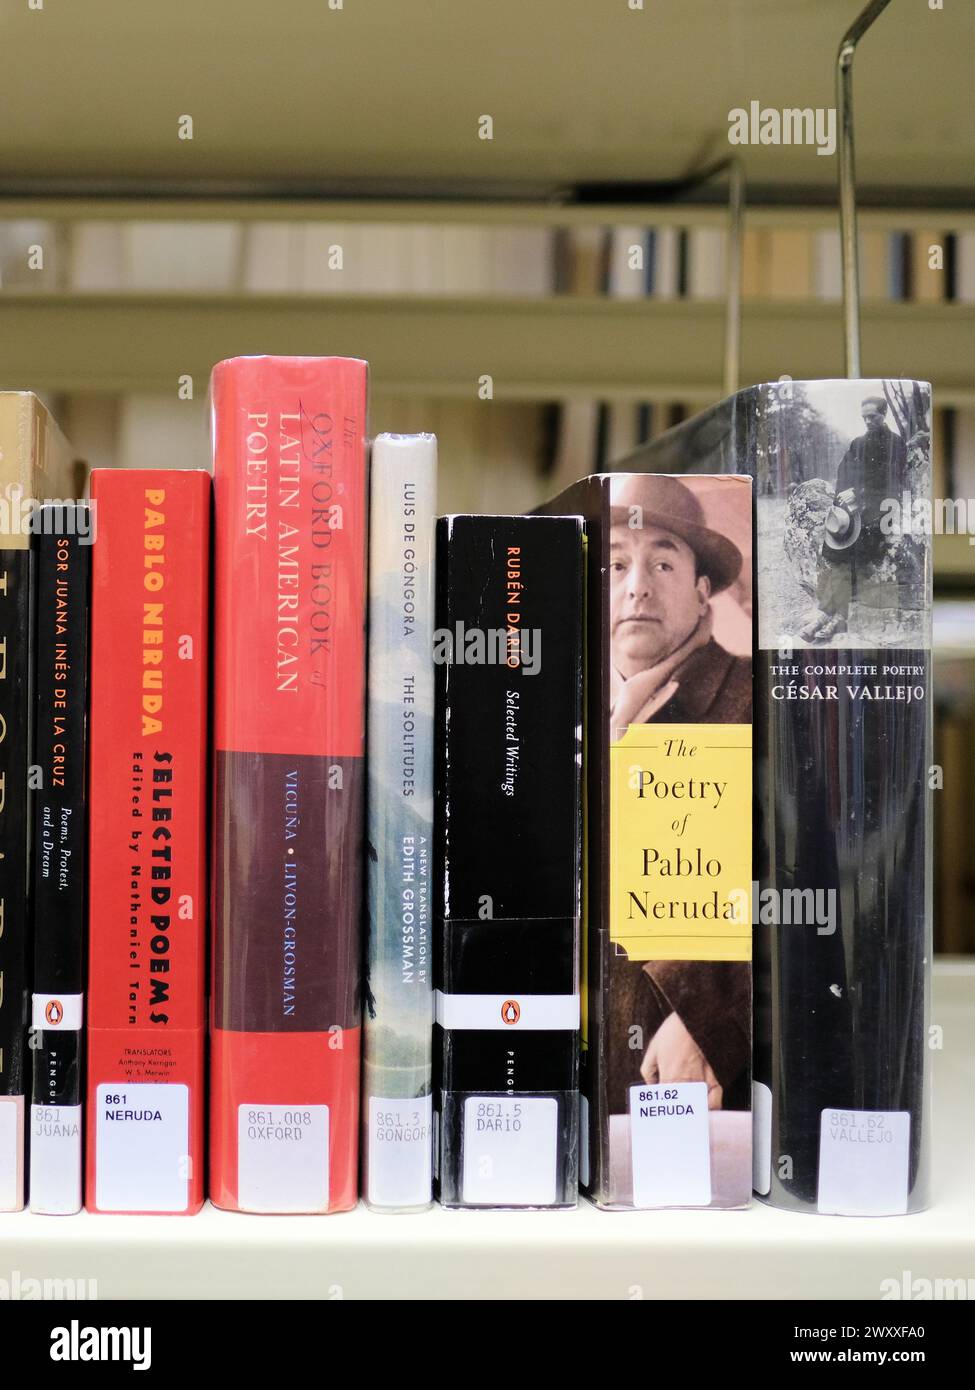 Libreria con libri e antologie di poesia latino-americana e ispanica; Oxford Book, Pablo Neruda, Cesar Vallejo, Ruben Dario, SOR Juana. Foto Stock